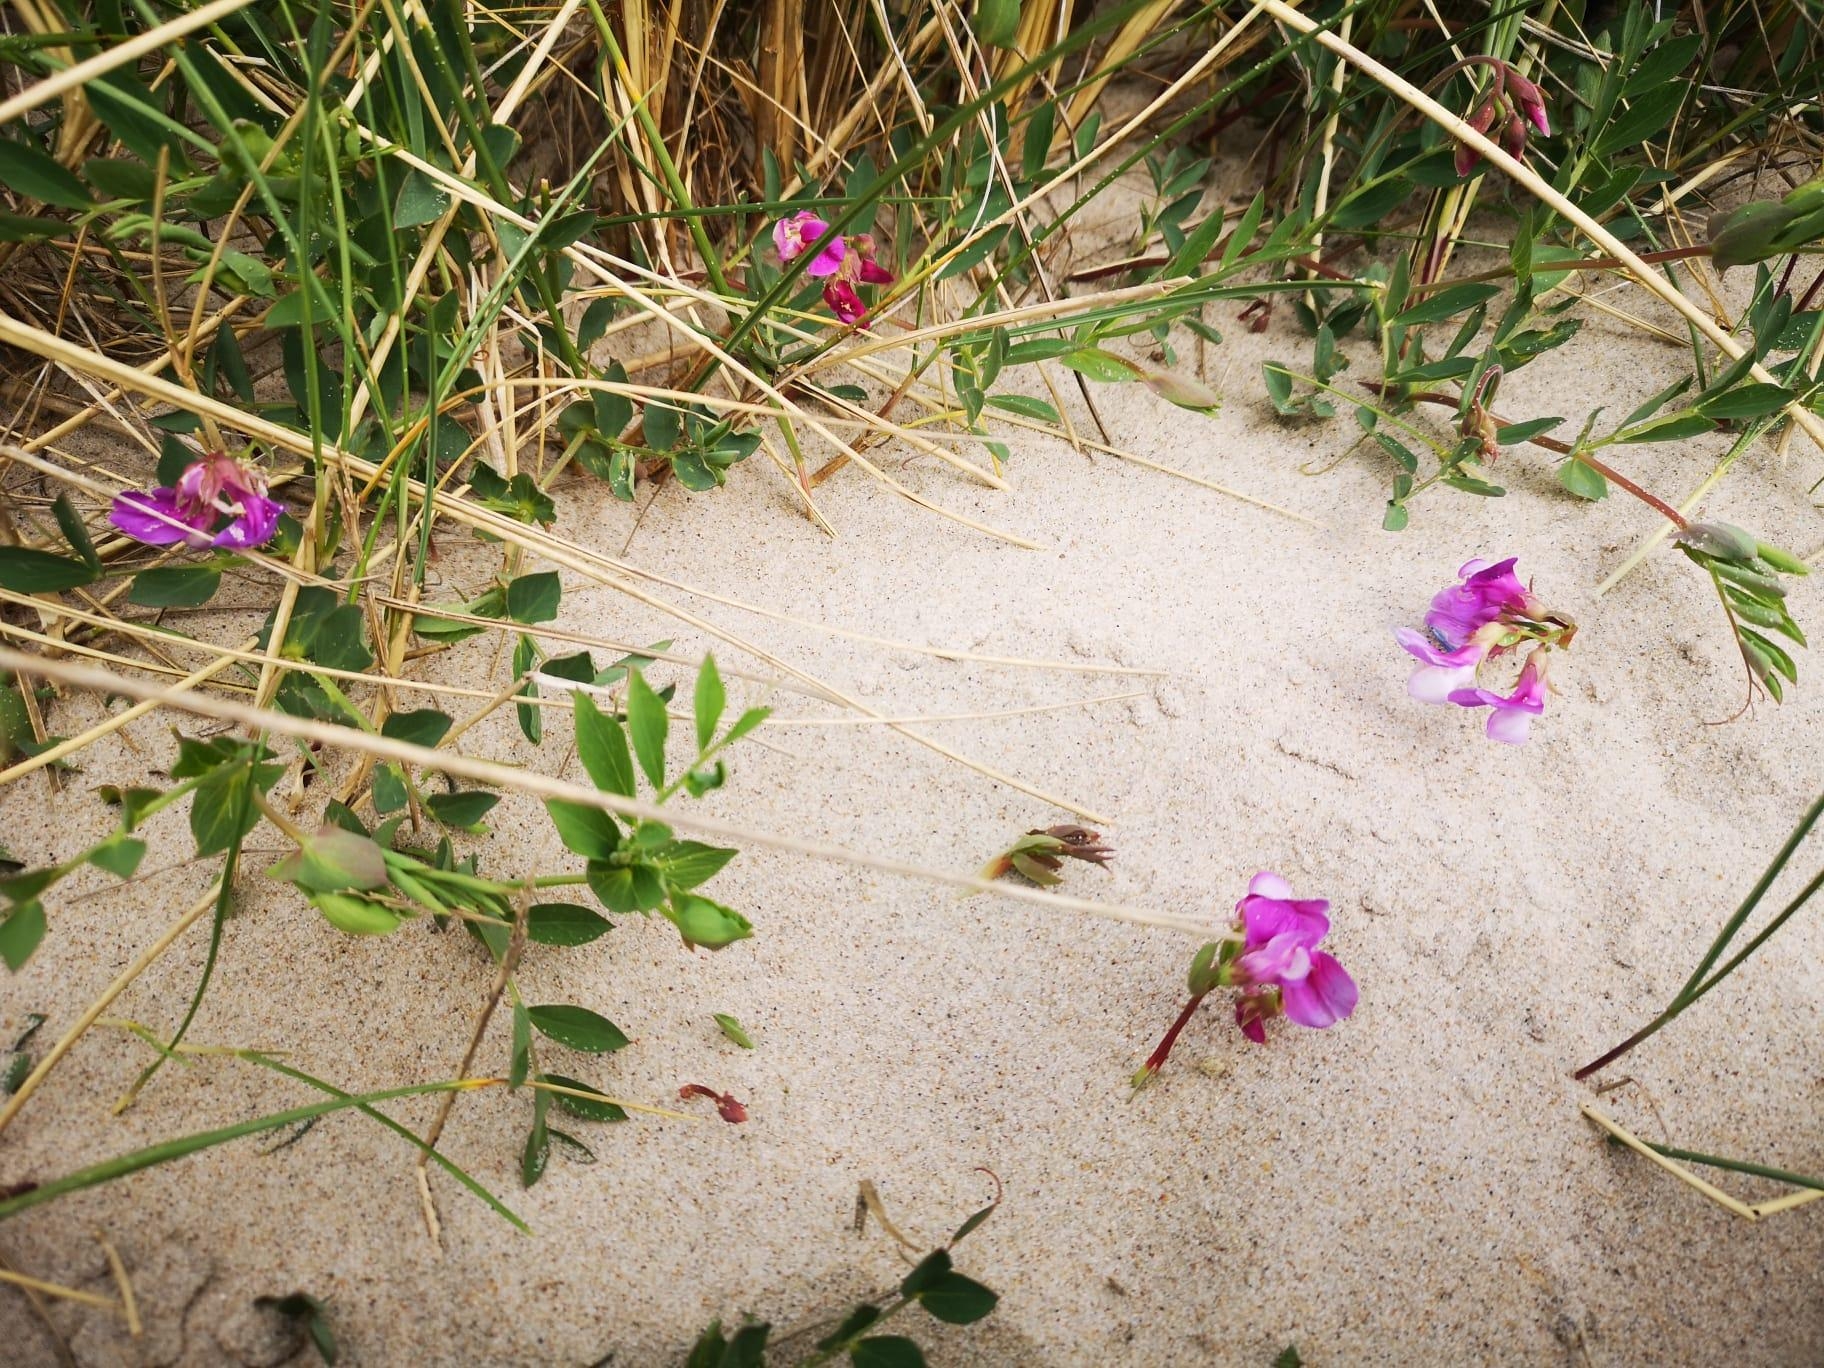 Überall gibt es #Leben, man muss nur hinsehen. #Strand #Blumen  #Natur